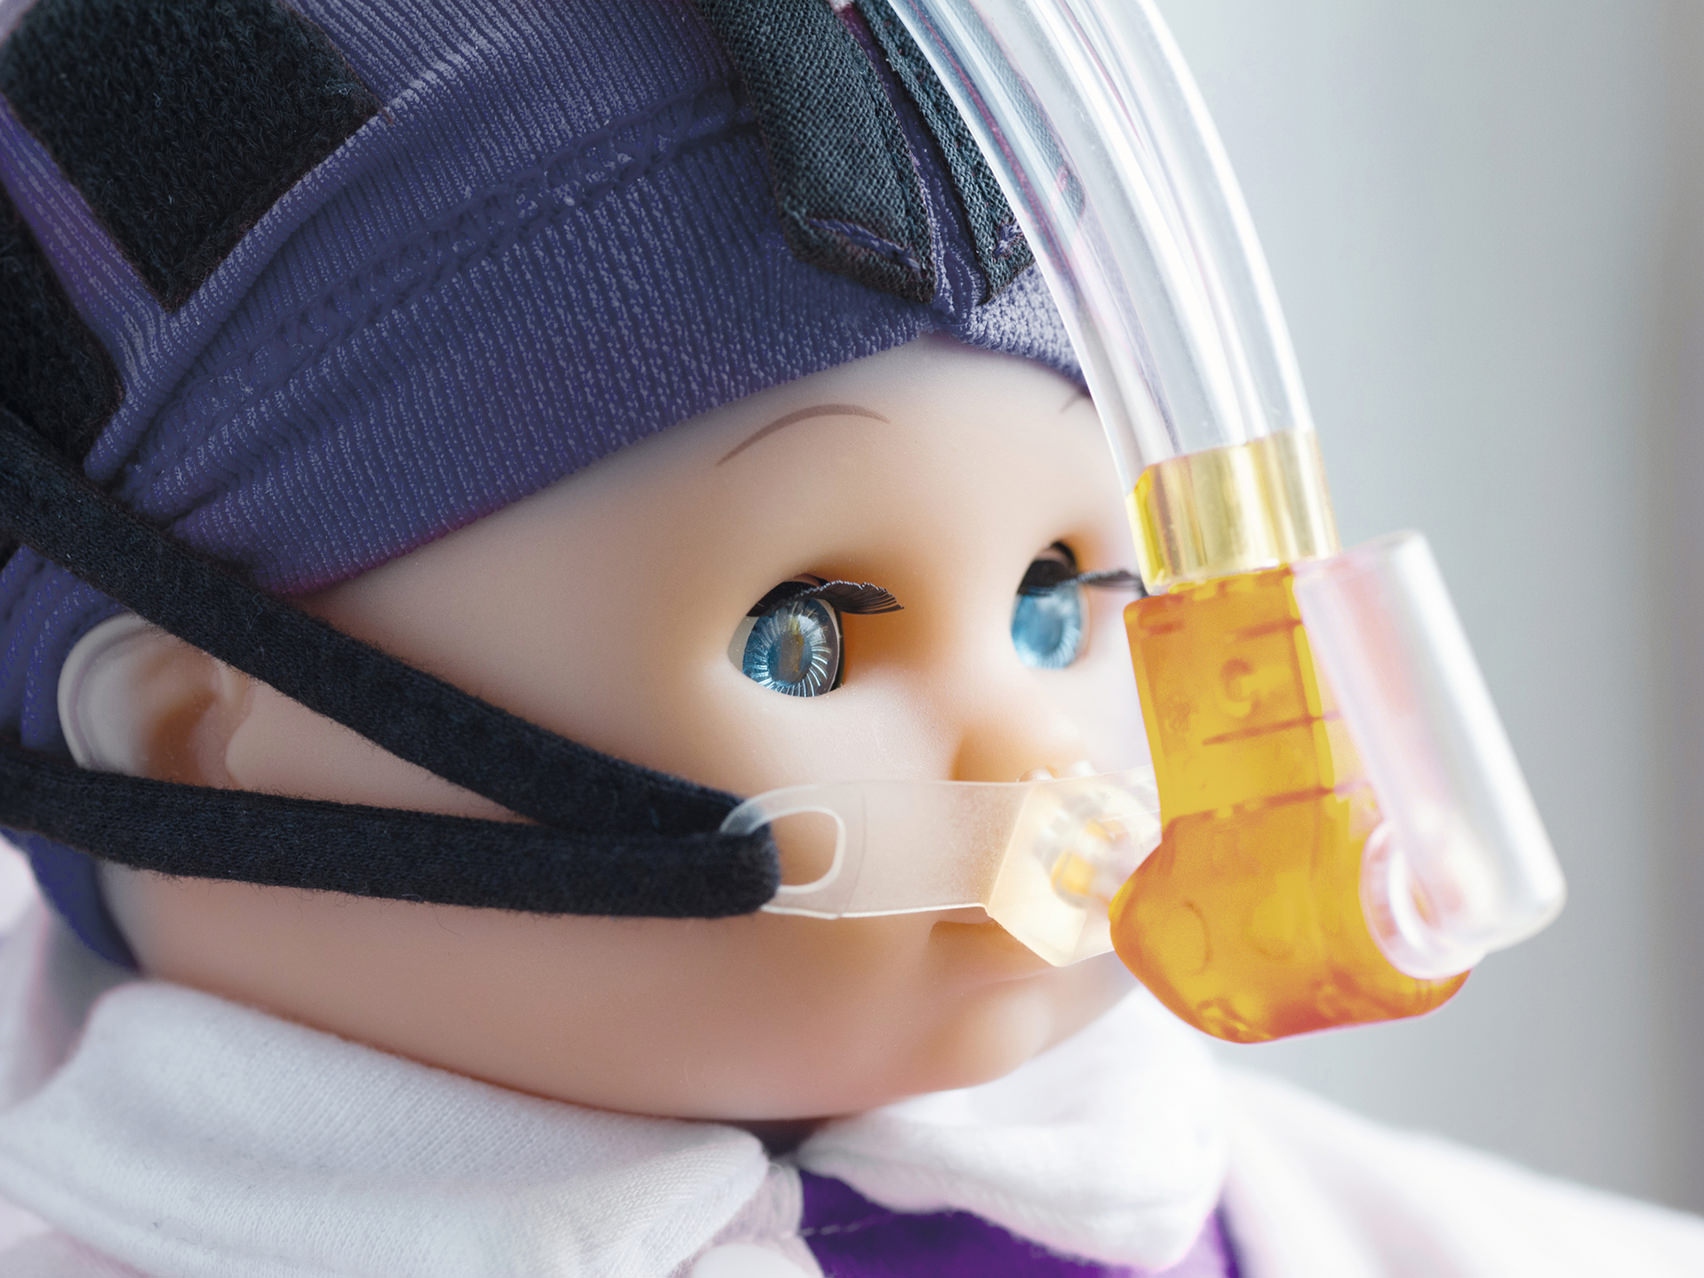 Nærbillede af en dukkes ansigt med en åndedrætsmaske.